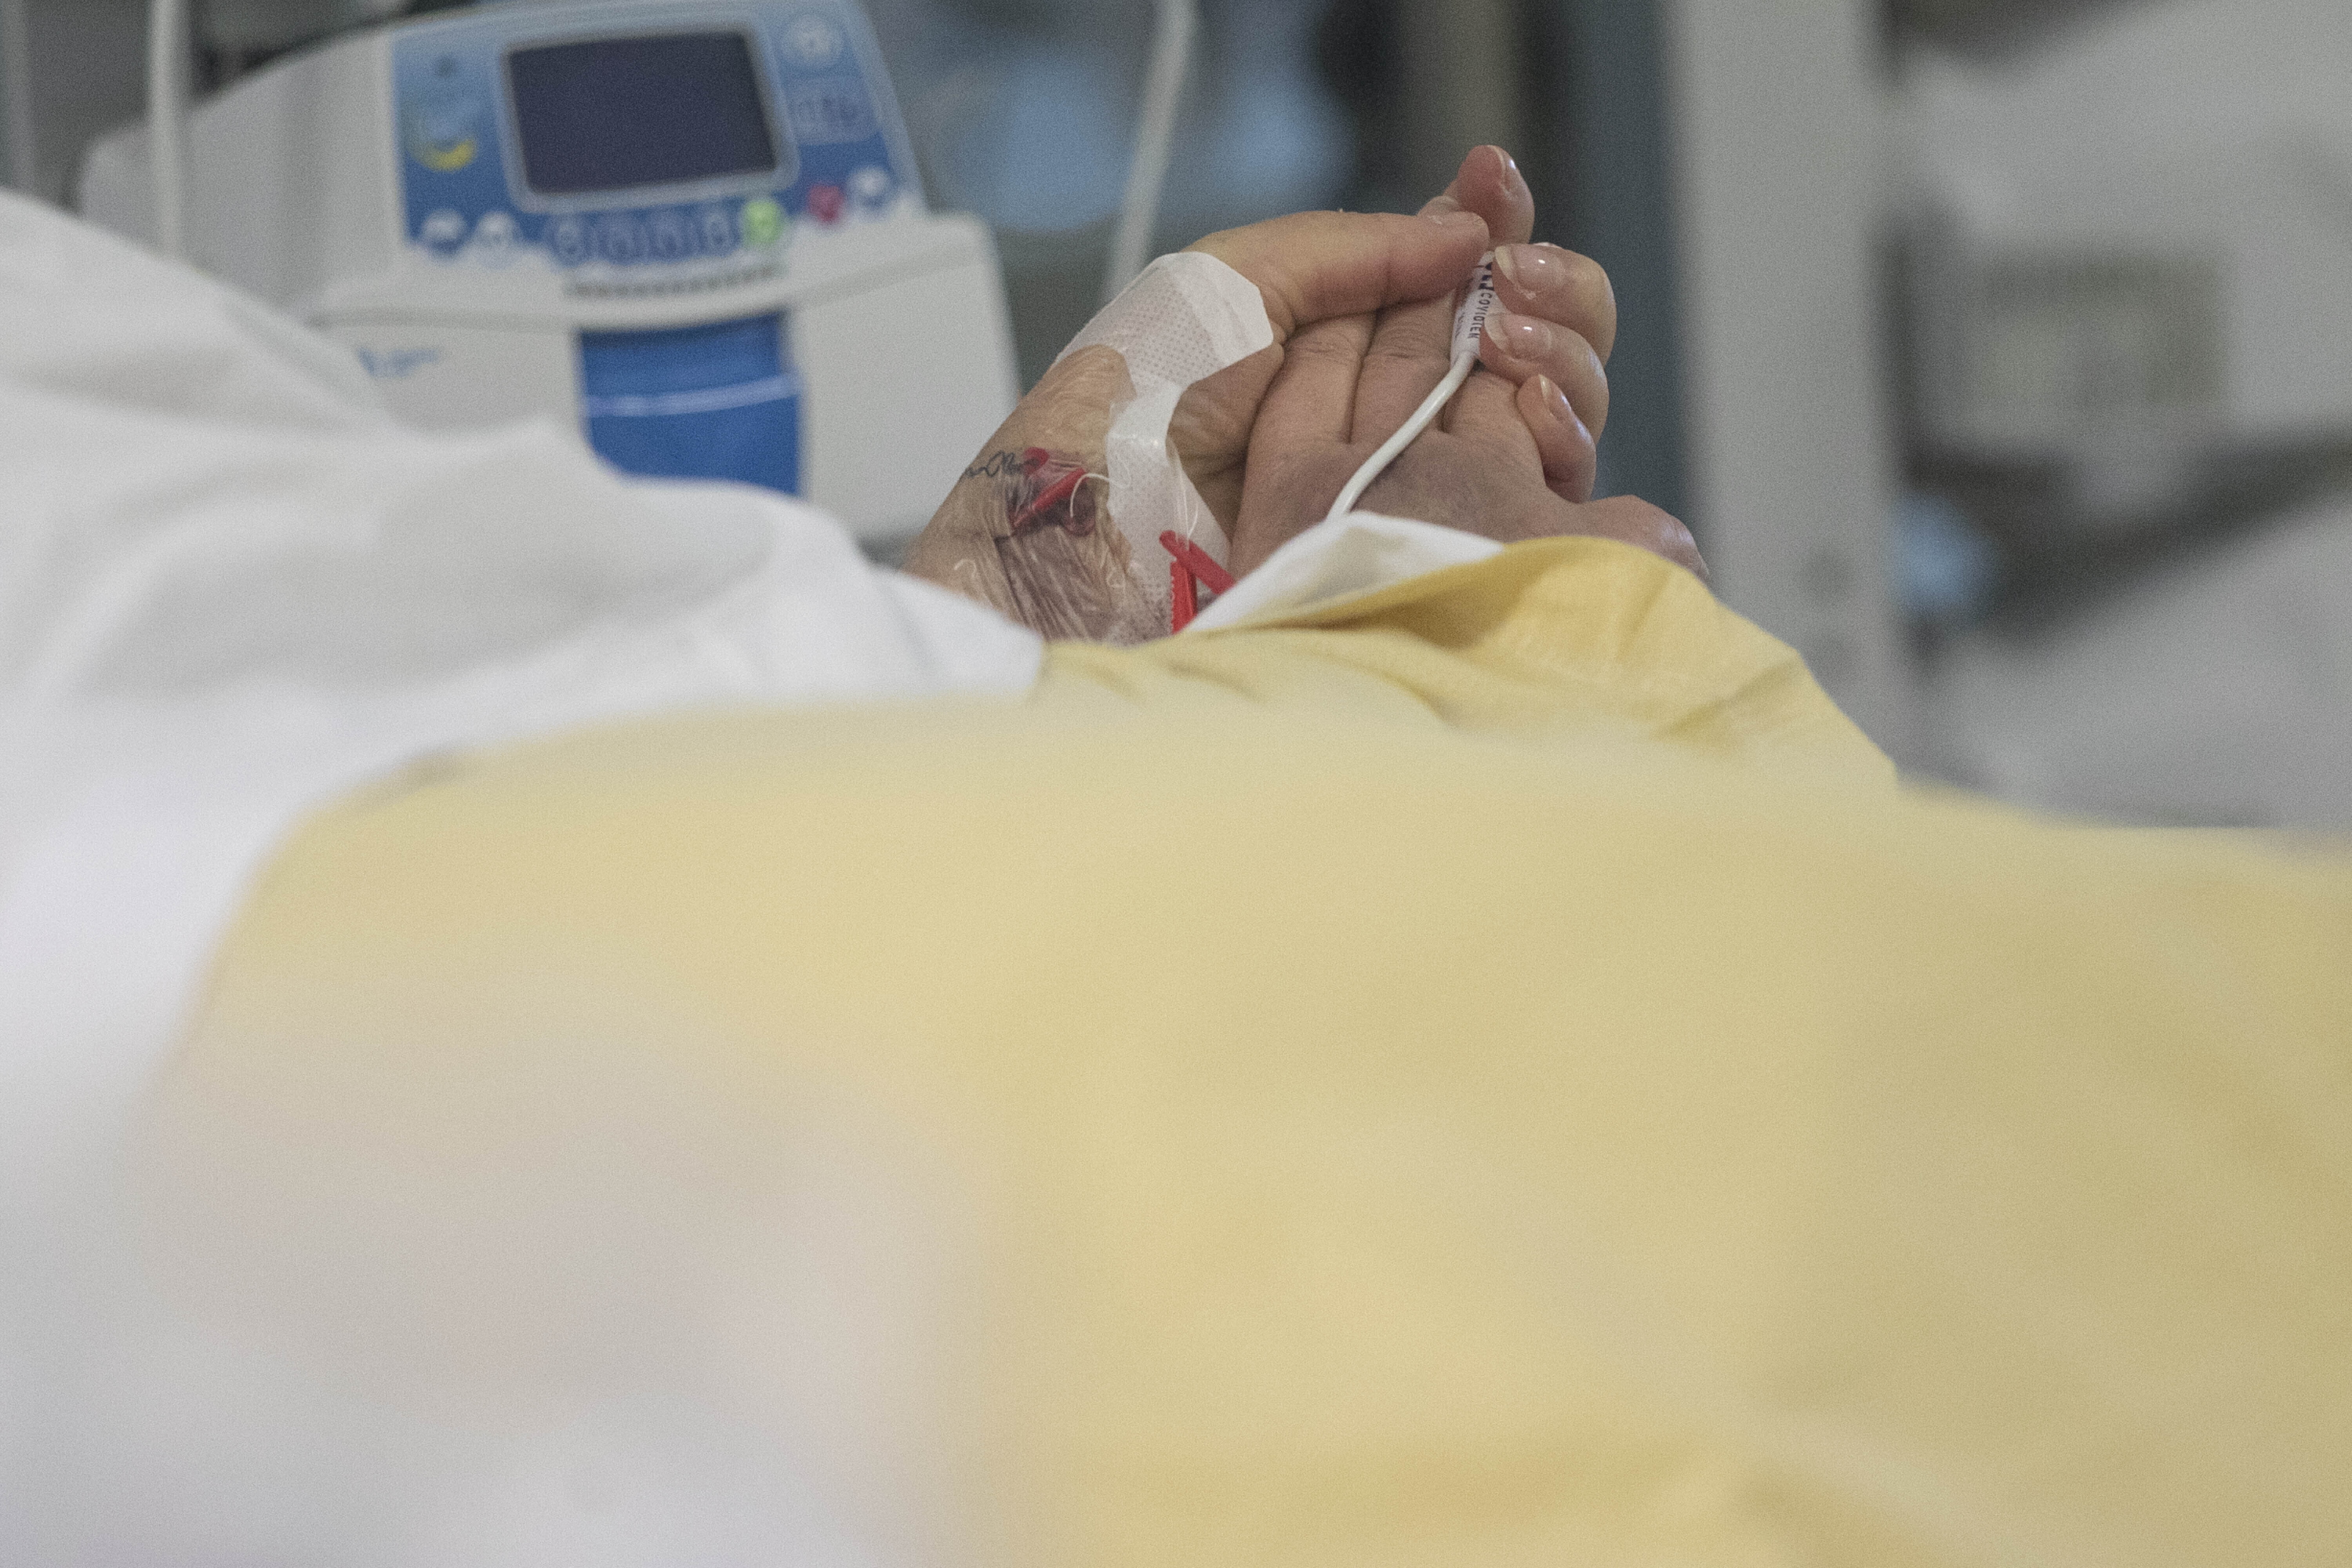 Kórházlelkész: Mire elvégeztem az egyik szertartást, addigra a másik ágyon meghalt a hölgy